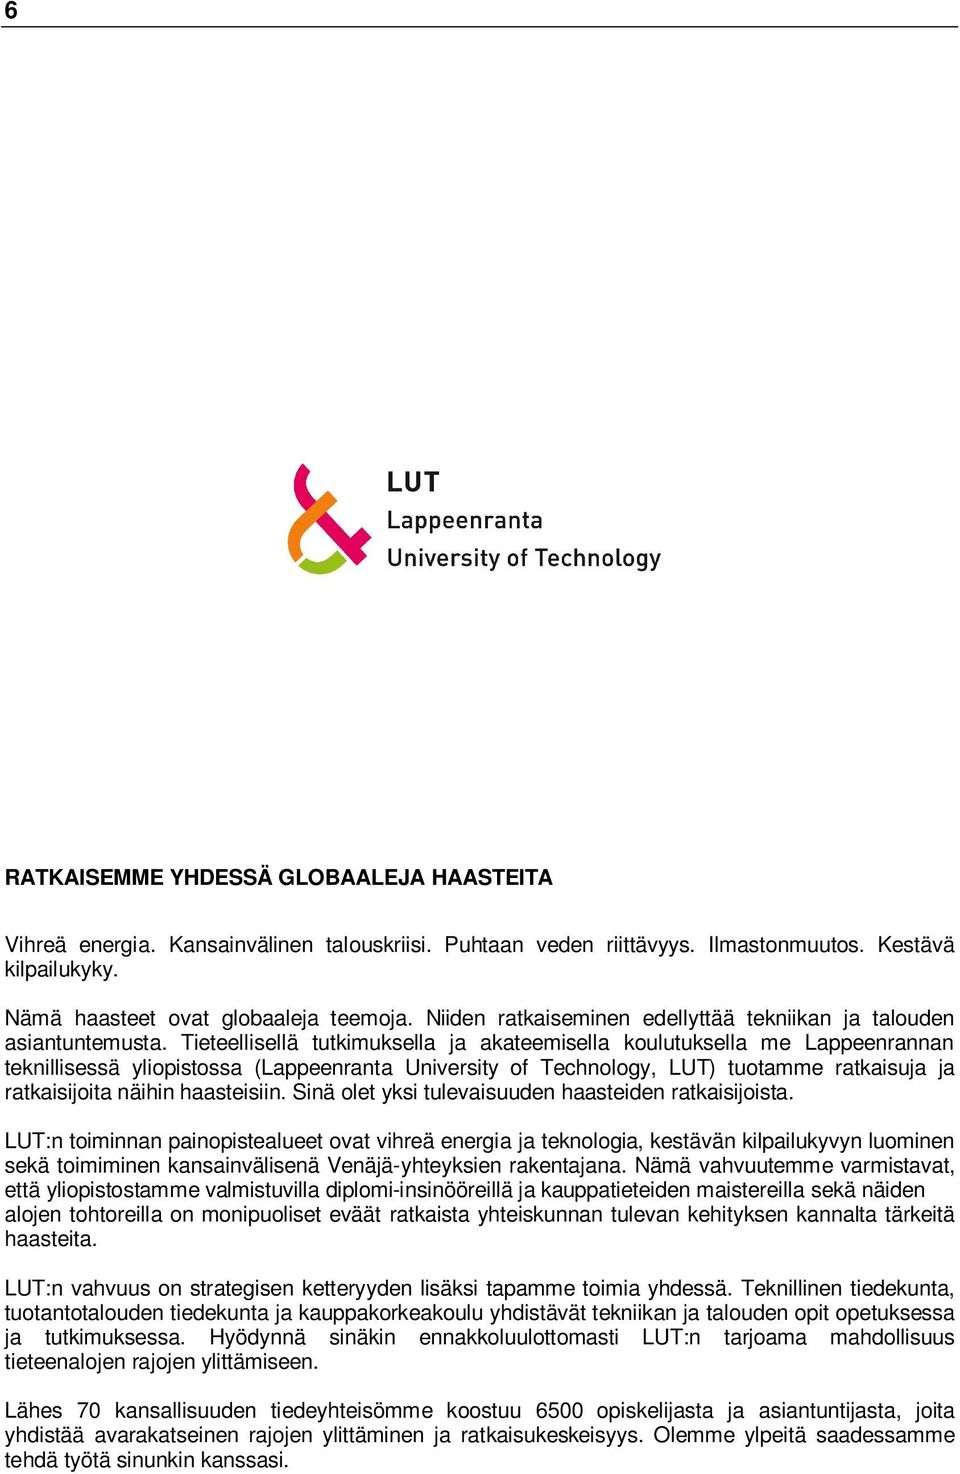 Tieteellisellä tutkimuksella ja akateemisella koulutuksella me Lappeenrannan teknillisessä yliopistossa (Lappeenranta University of Technology, LUT) tuotamme ratkaisuja ja ratkaisijoita näihin